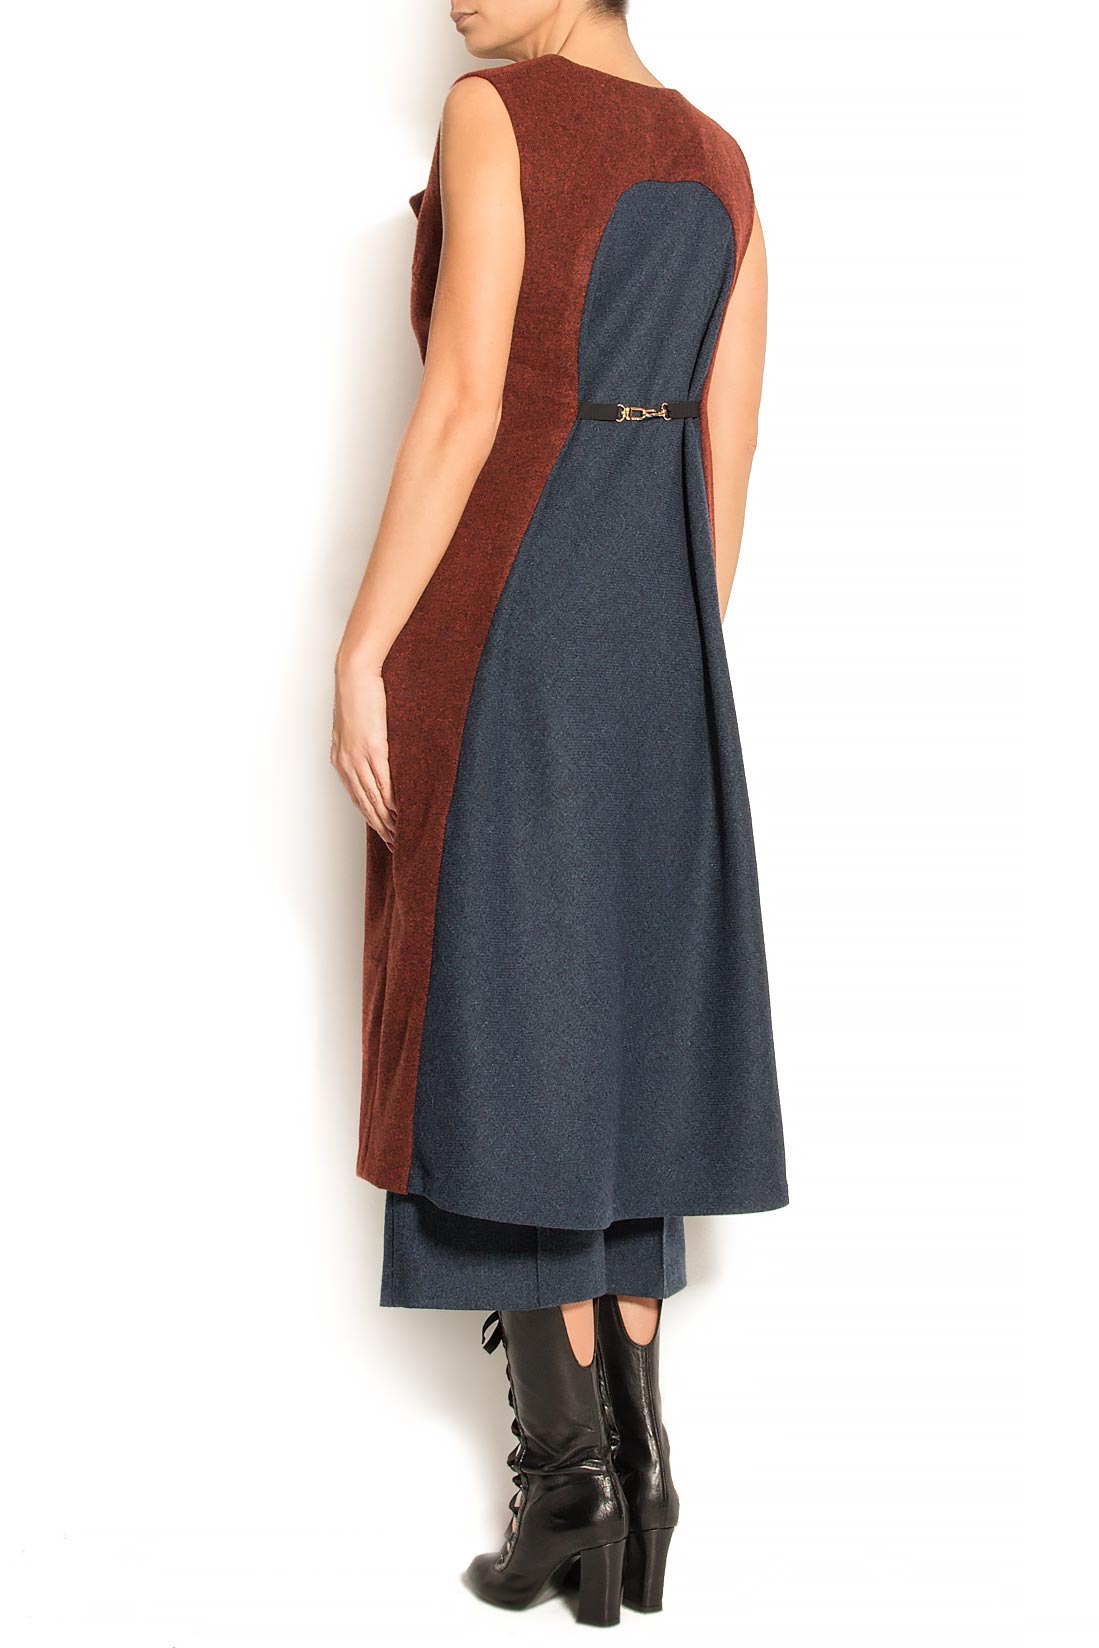 Vesta tip rochie din lana in doua culori ATU Body Couture imagine 2